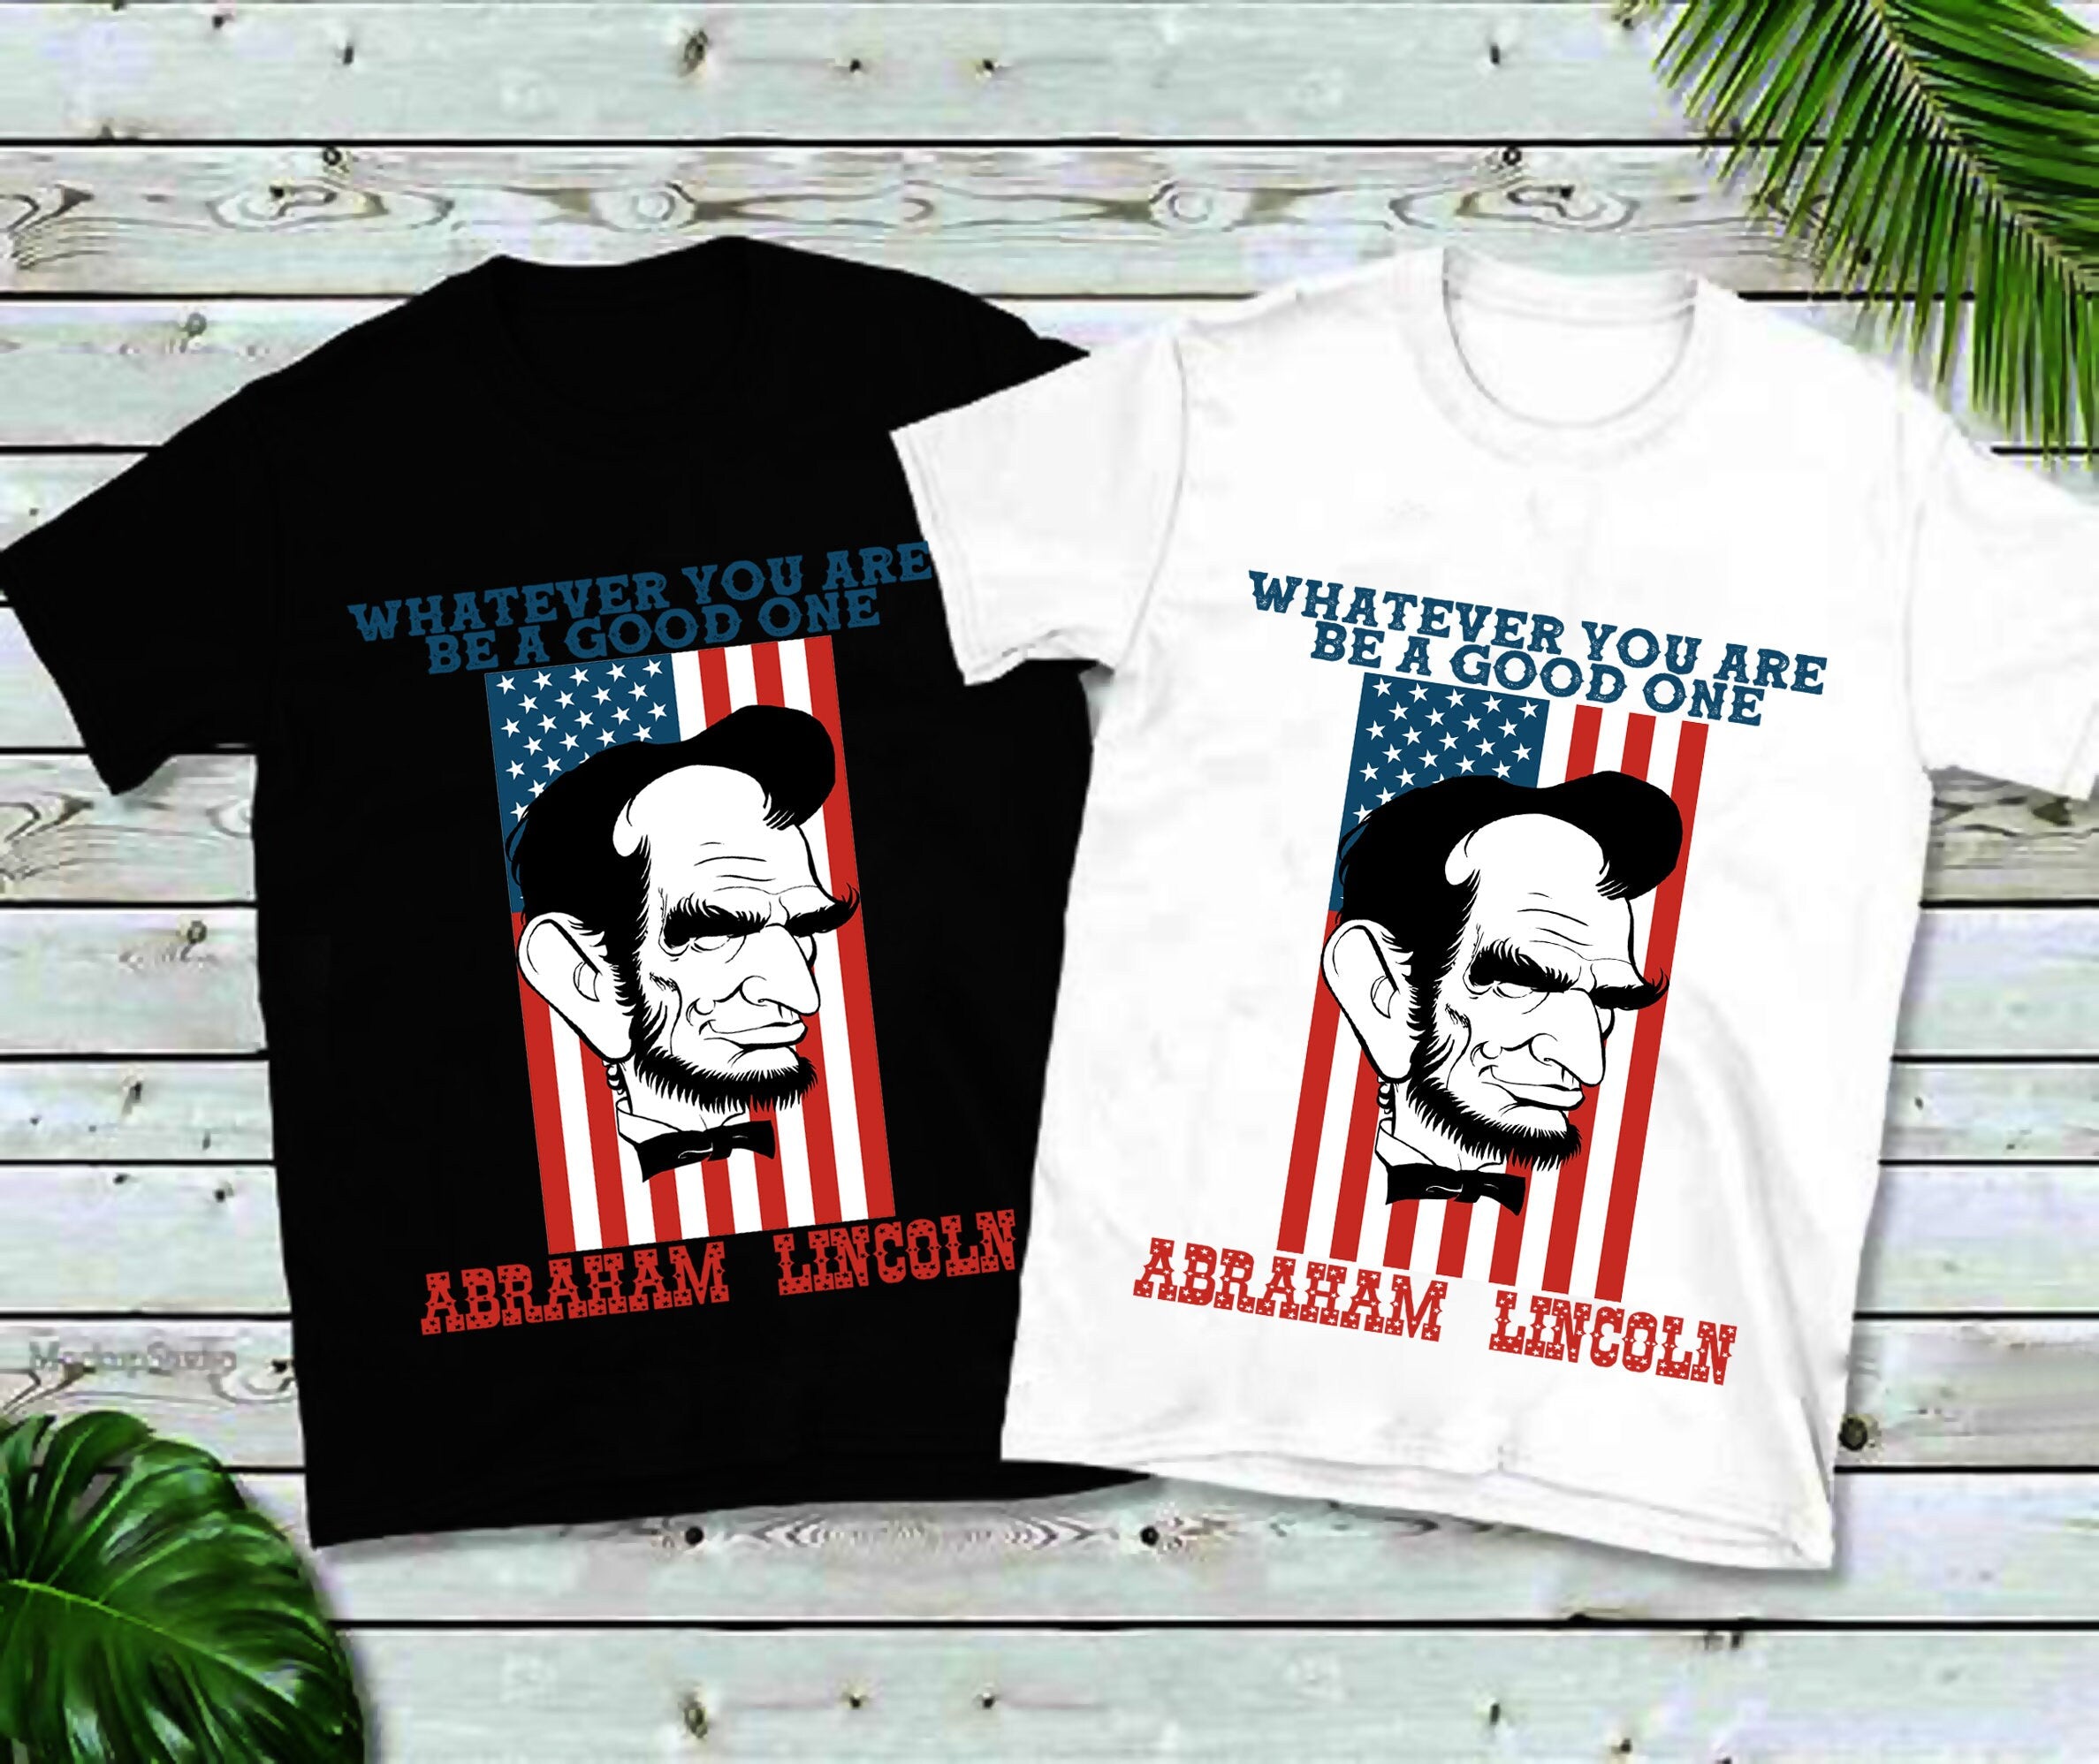 당신이 무엇이든 좋은 사람이 되세요, Abraham Lincoln 티셔츠, America Shirt, America, 4월 XNUMX일 티셔츠, 남녀공용 사이즈, USA, Abe Lincoln, Patriotic - plusminusco.com